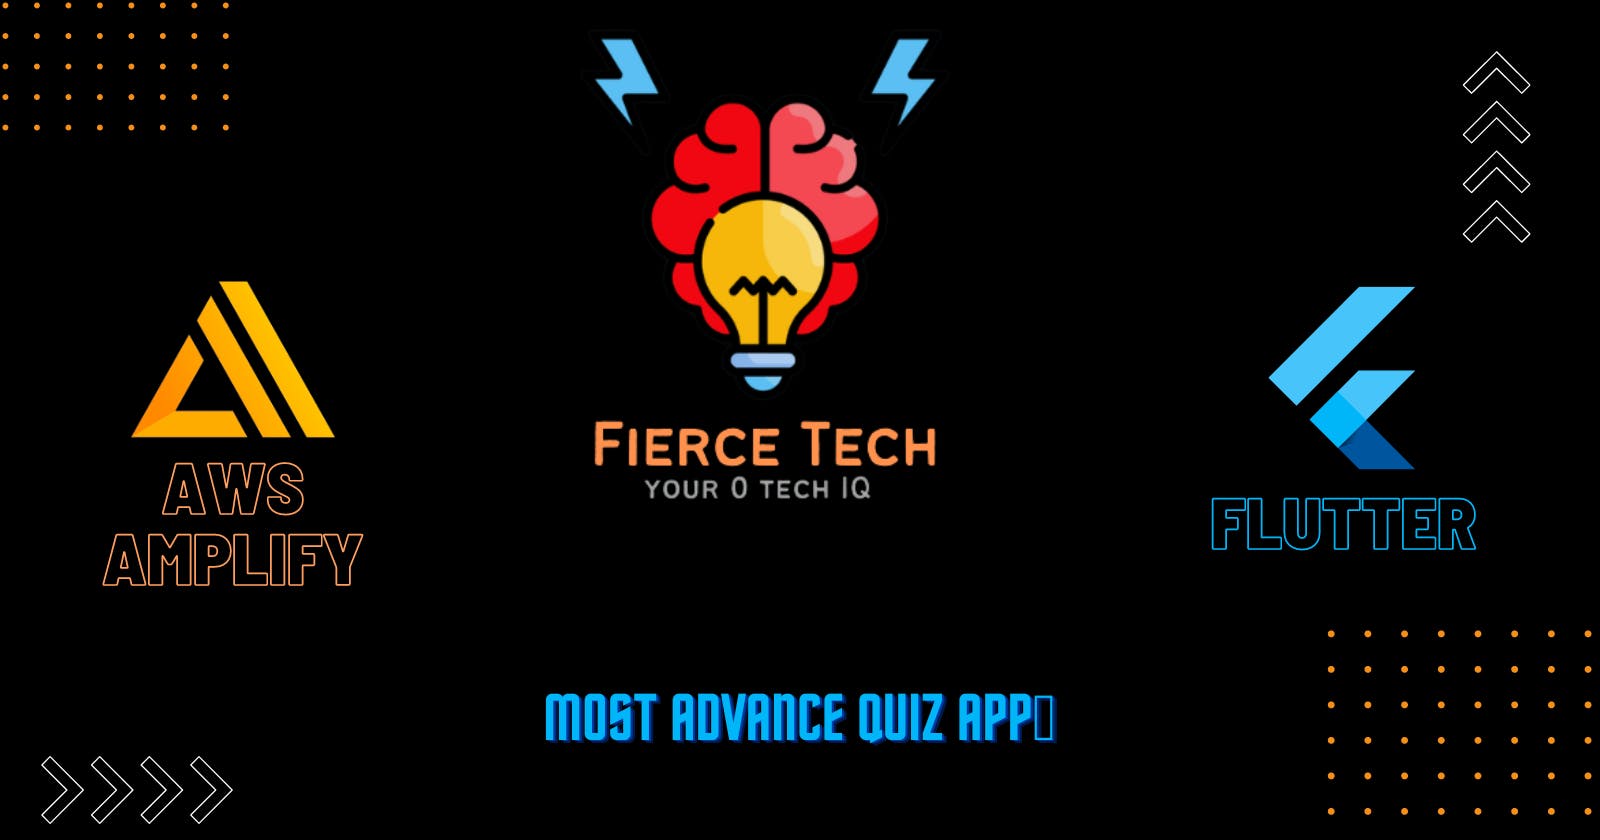 Fierce Tech: Your 0 tech IQ